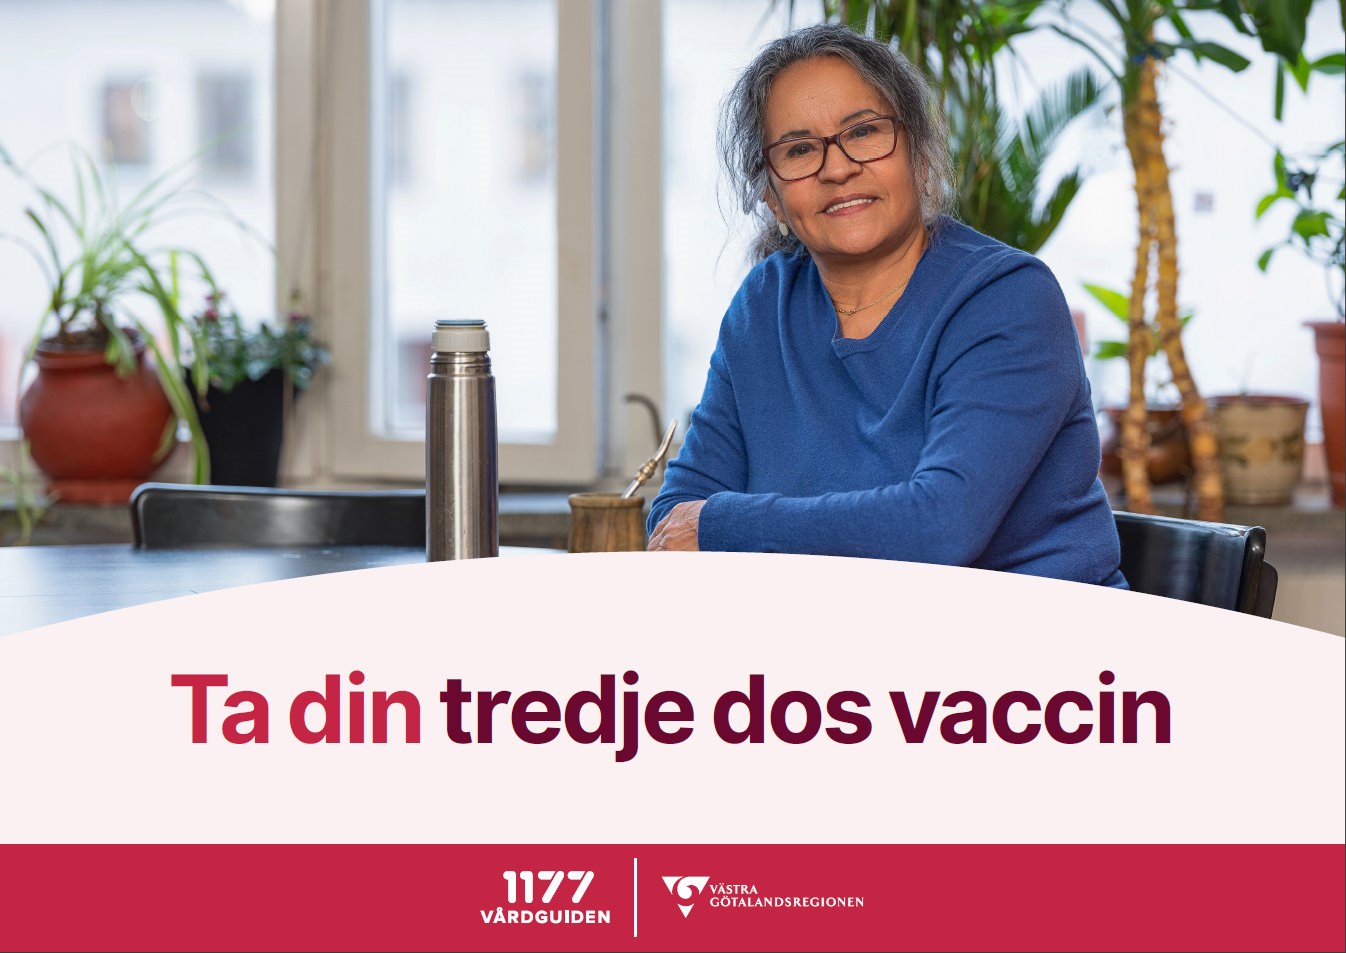 En bild av vykortet som skickades ut. Texten "ta din tredje dos vaccin" visas på mitten. I bakgrunden finns ett foto av en person som sitter vid ett bord. Logotyper för 1177-vårdguiden och Västra Götalandsregionen syns längst ner i bild.